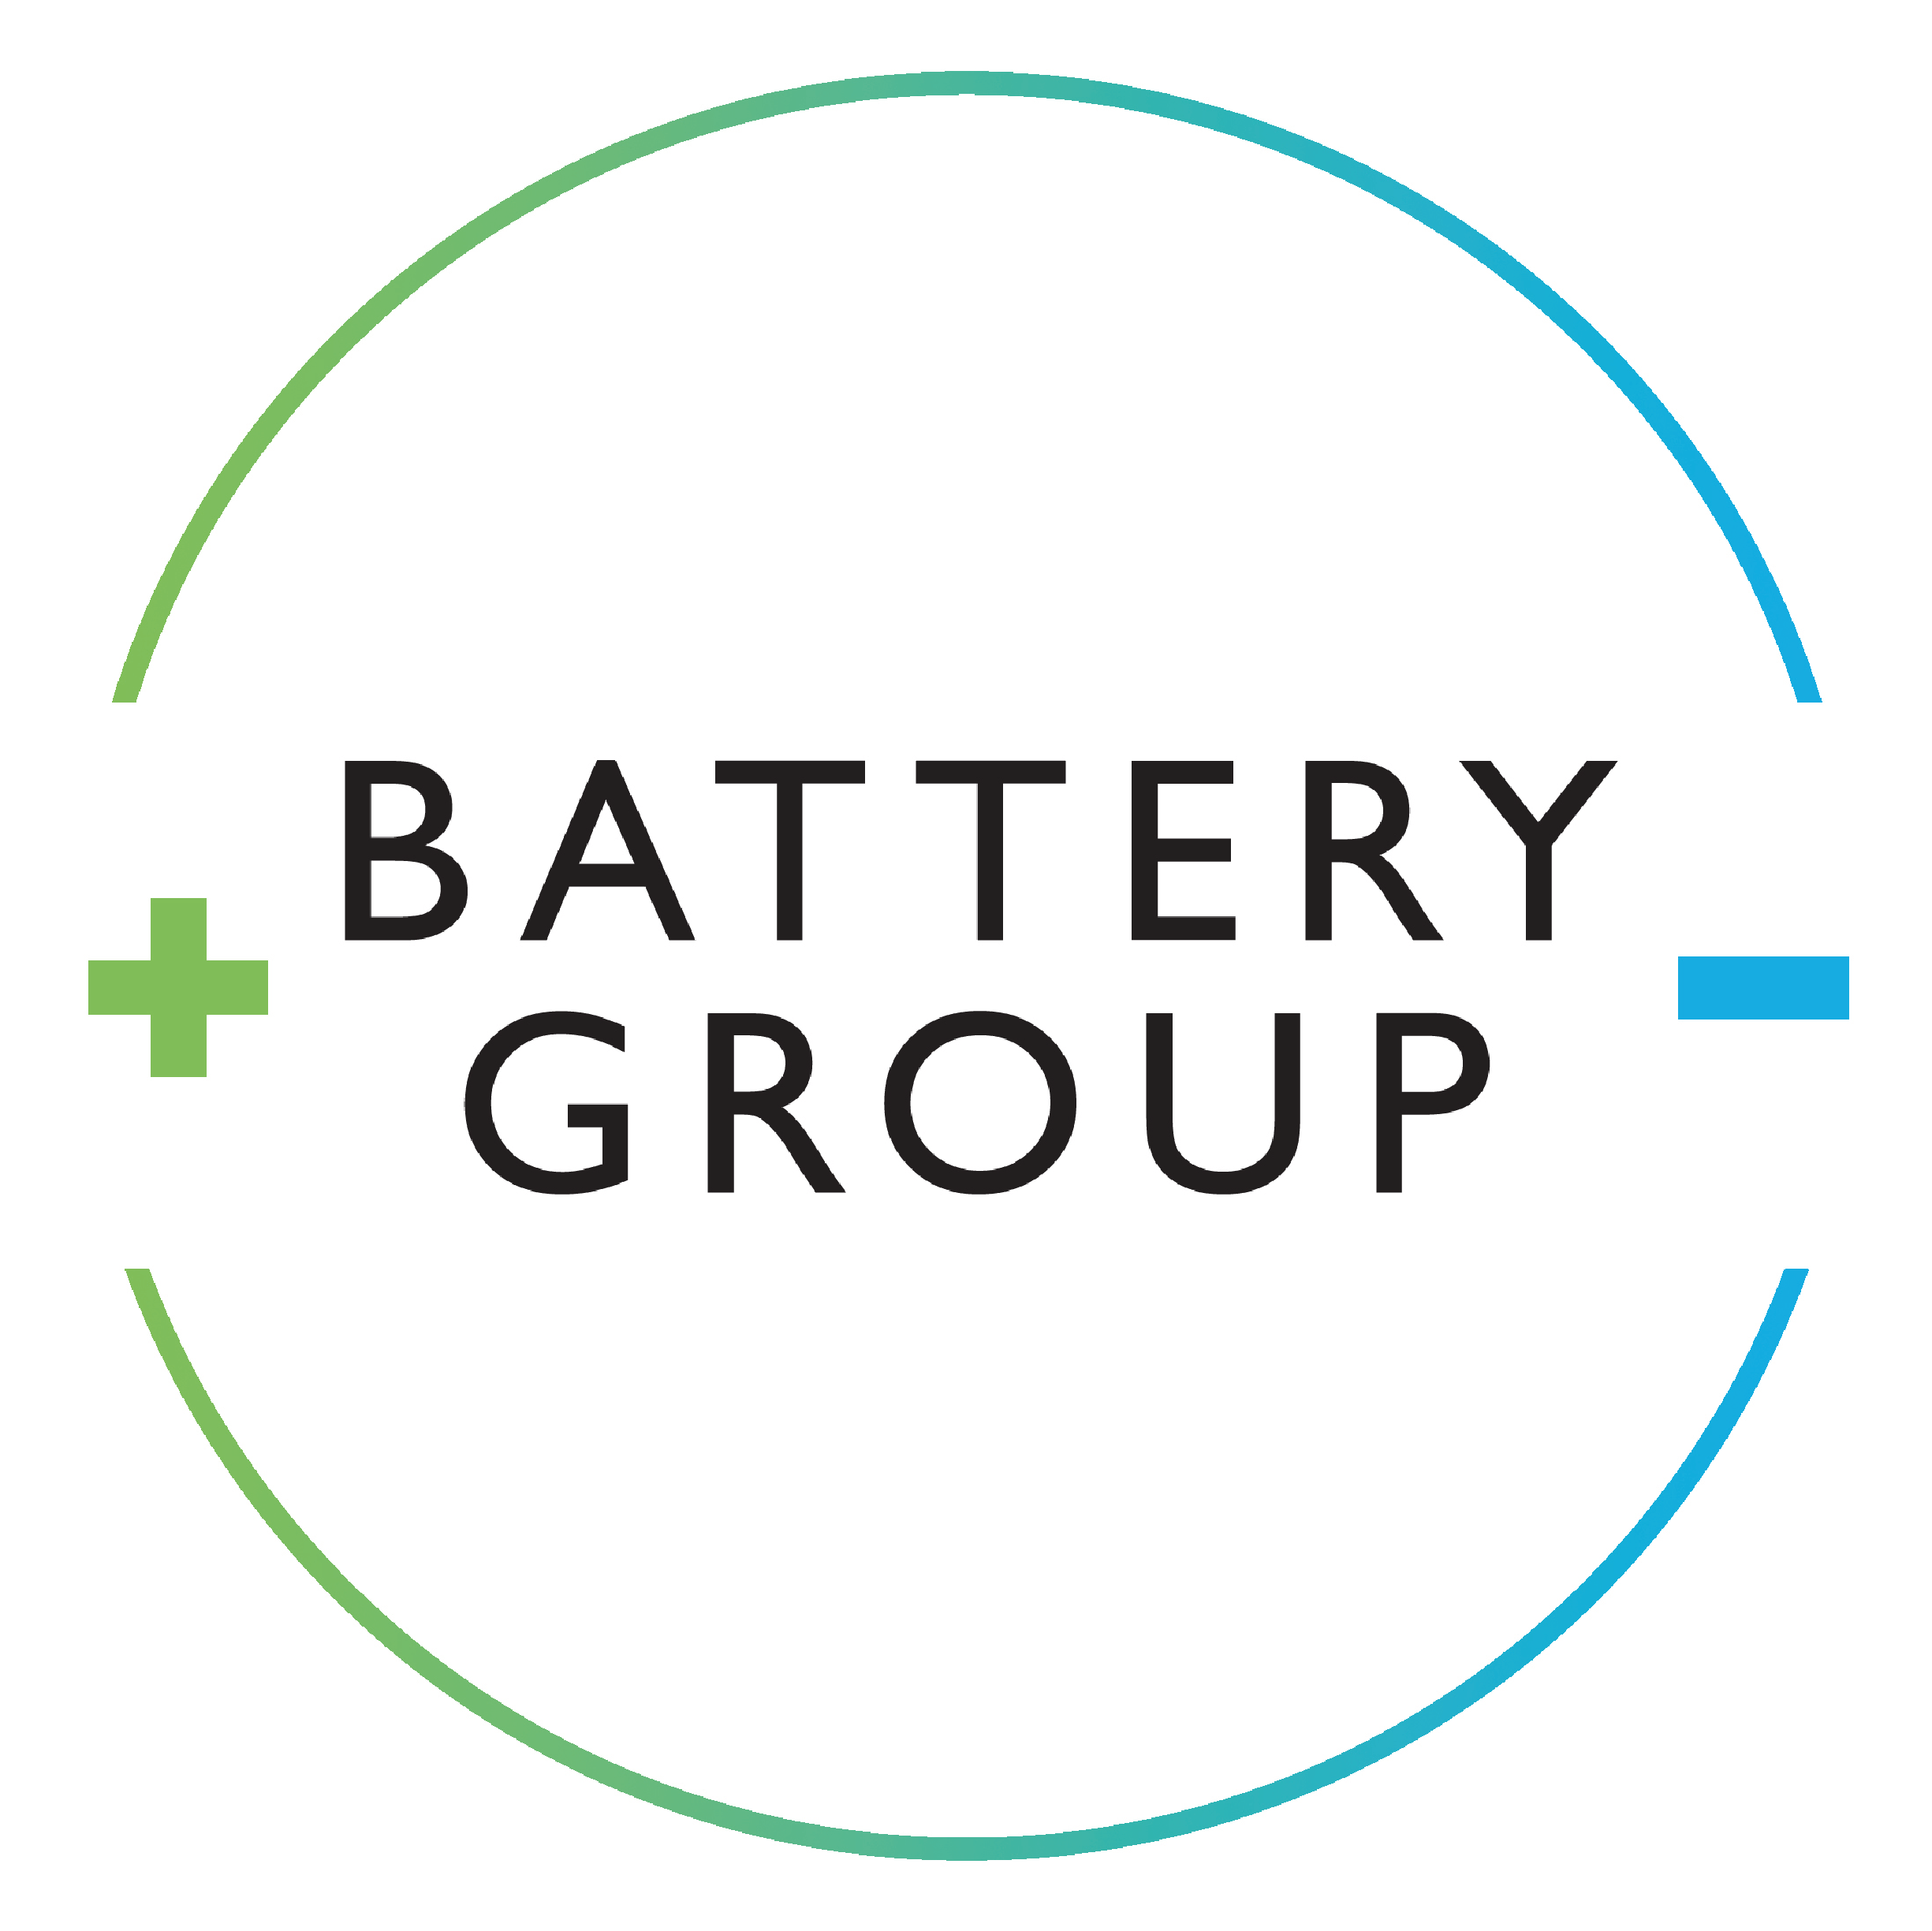 (c) Batterygroup.co.uk